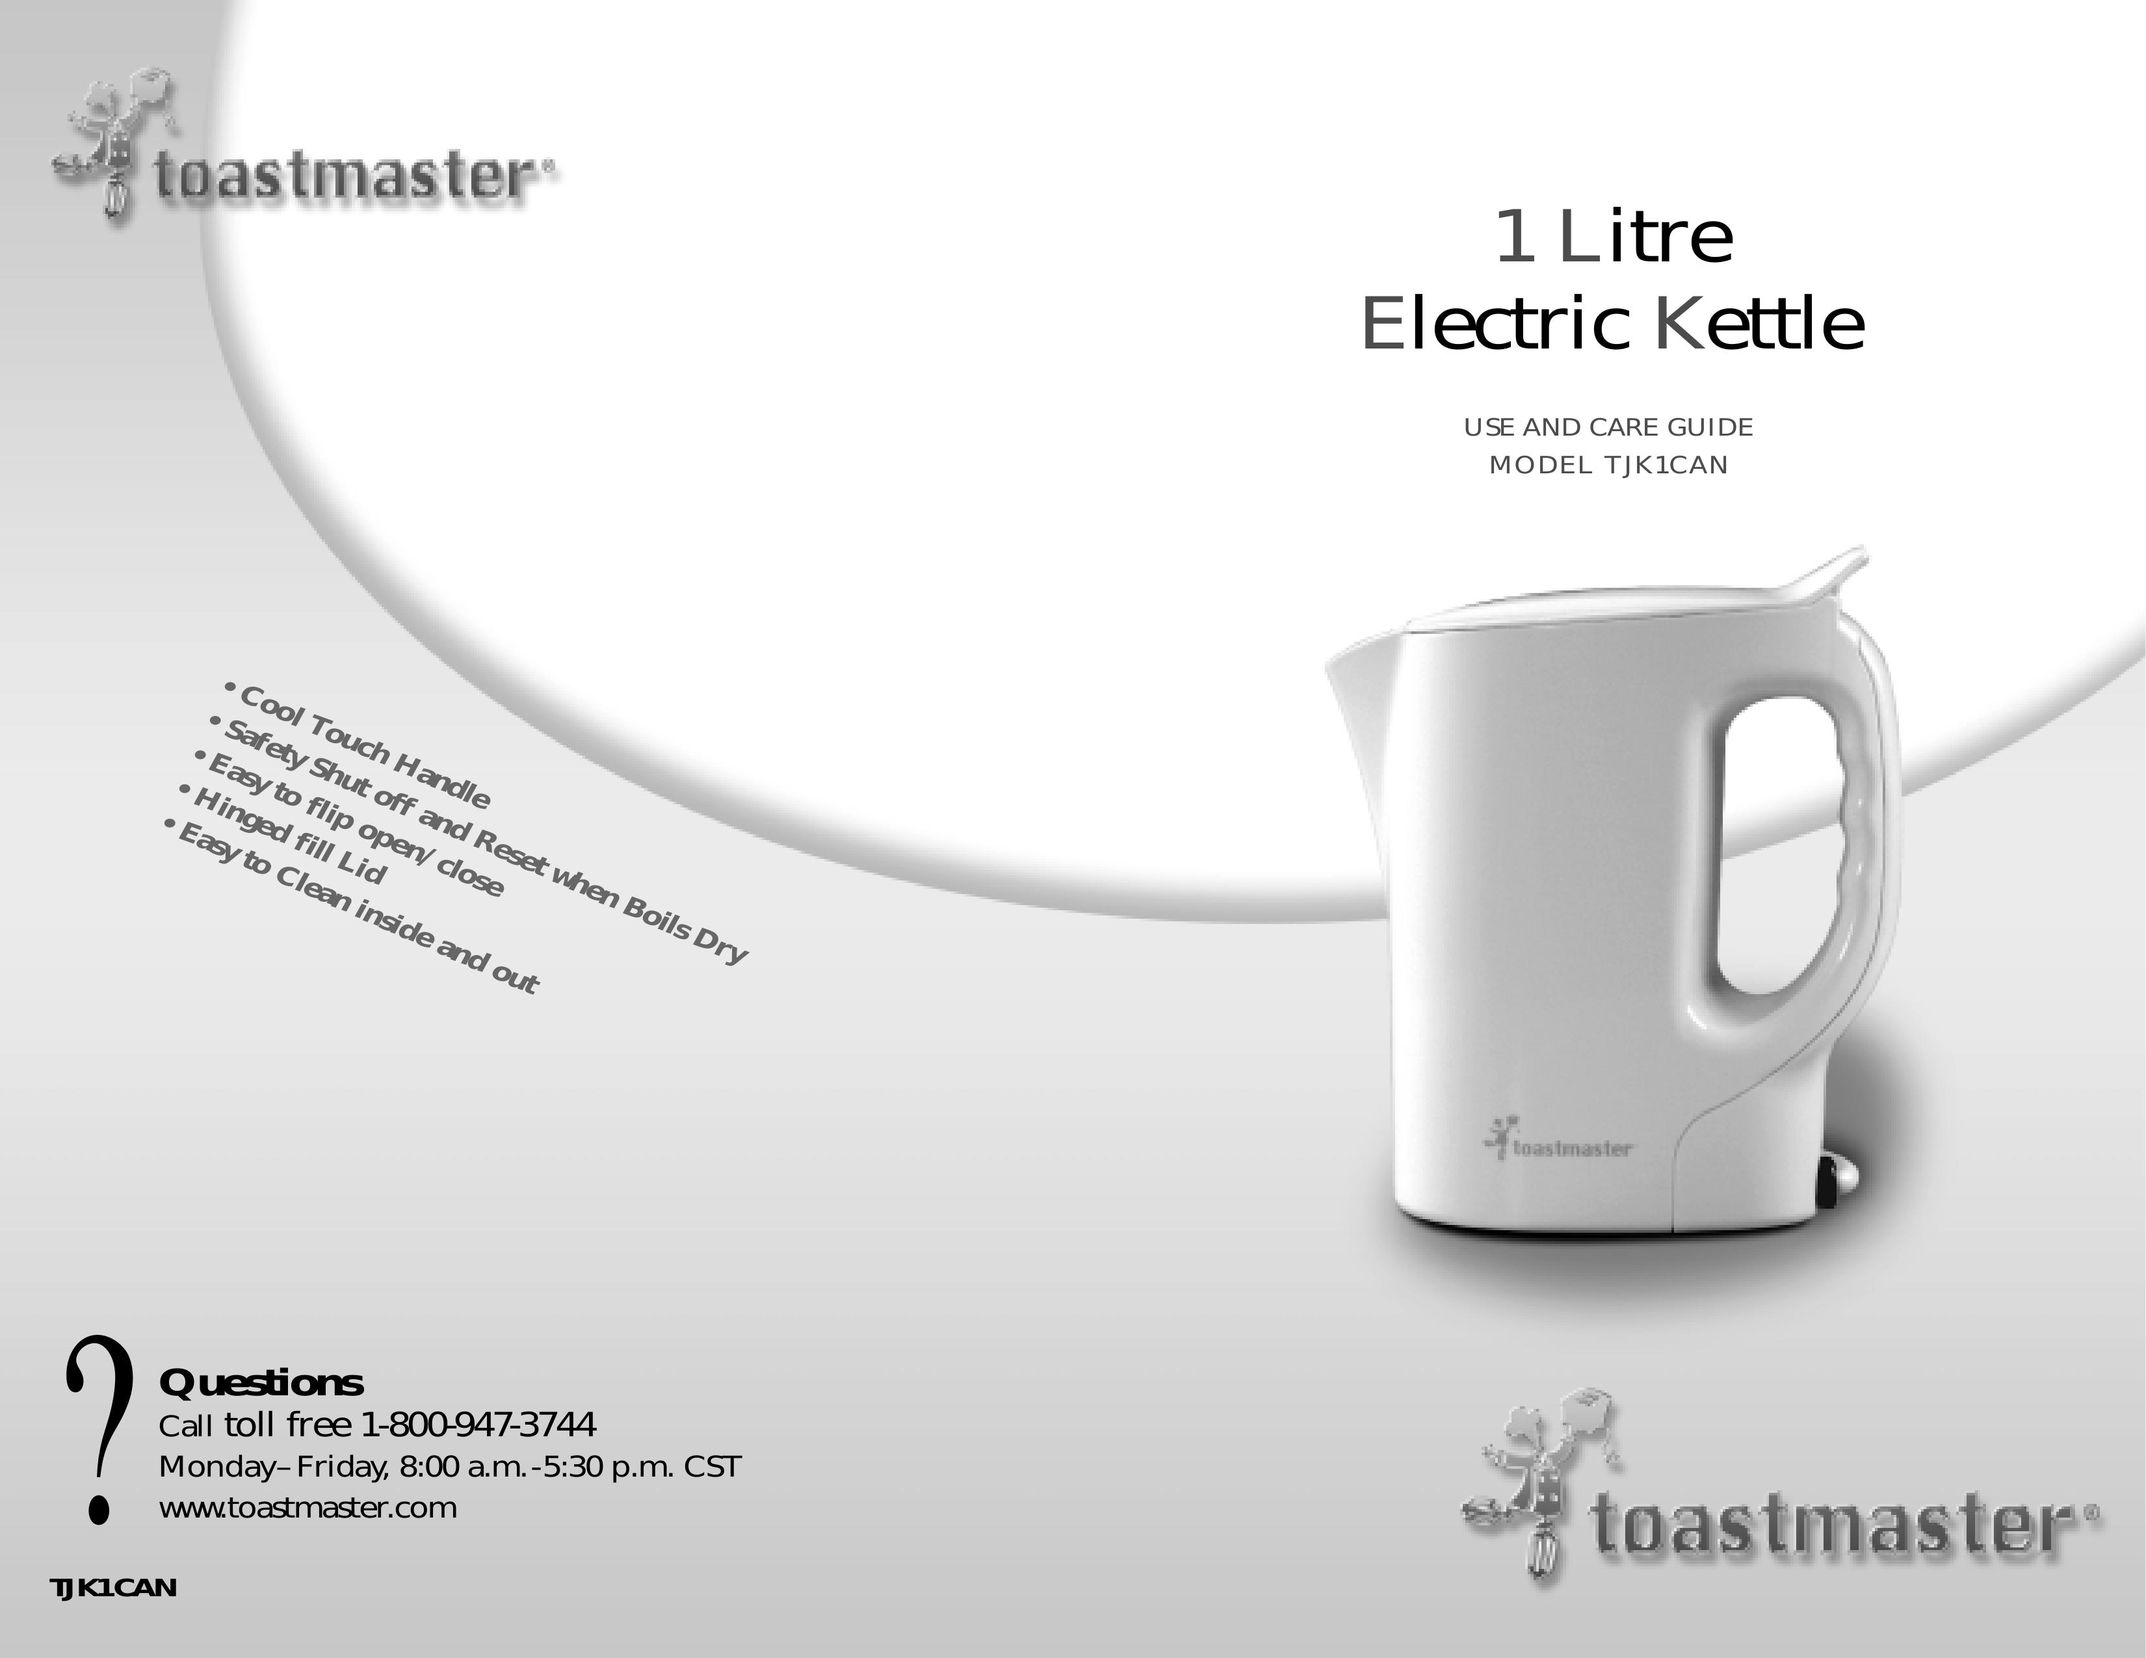 Toastmaster TJK1CAN Hot Beverage Maker User Manual